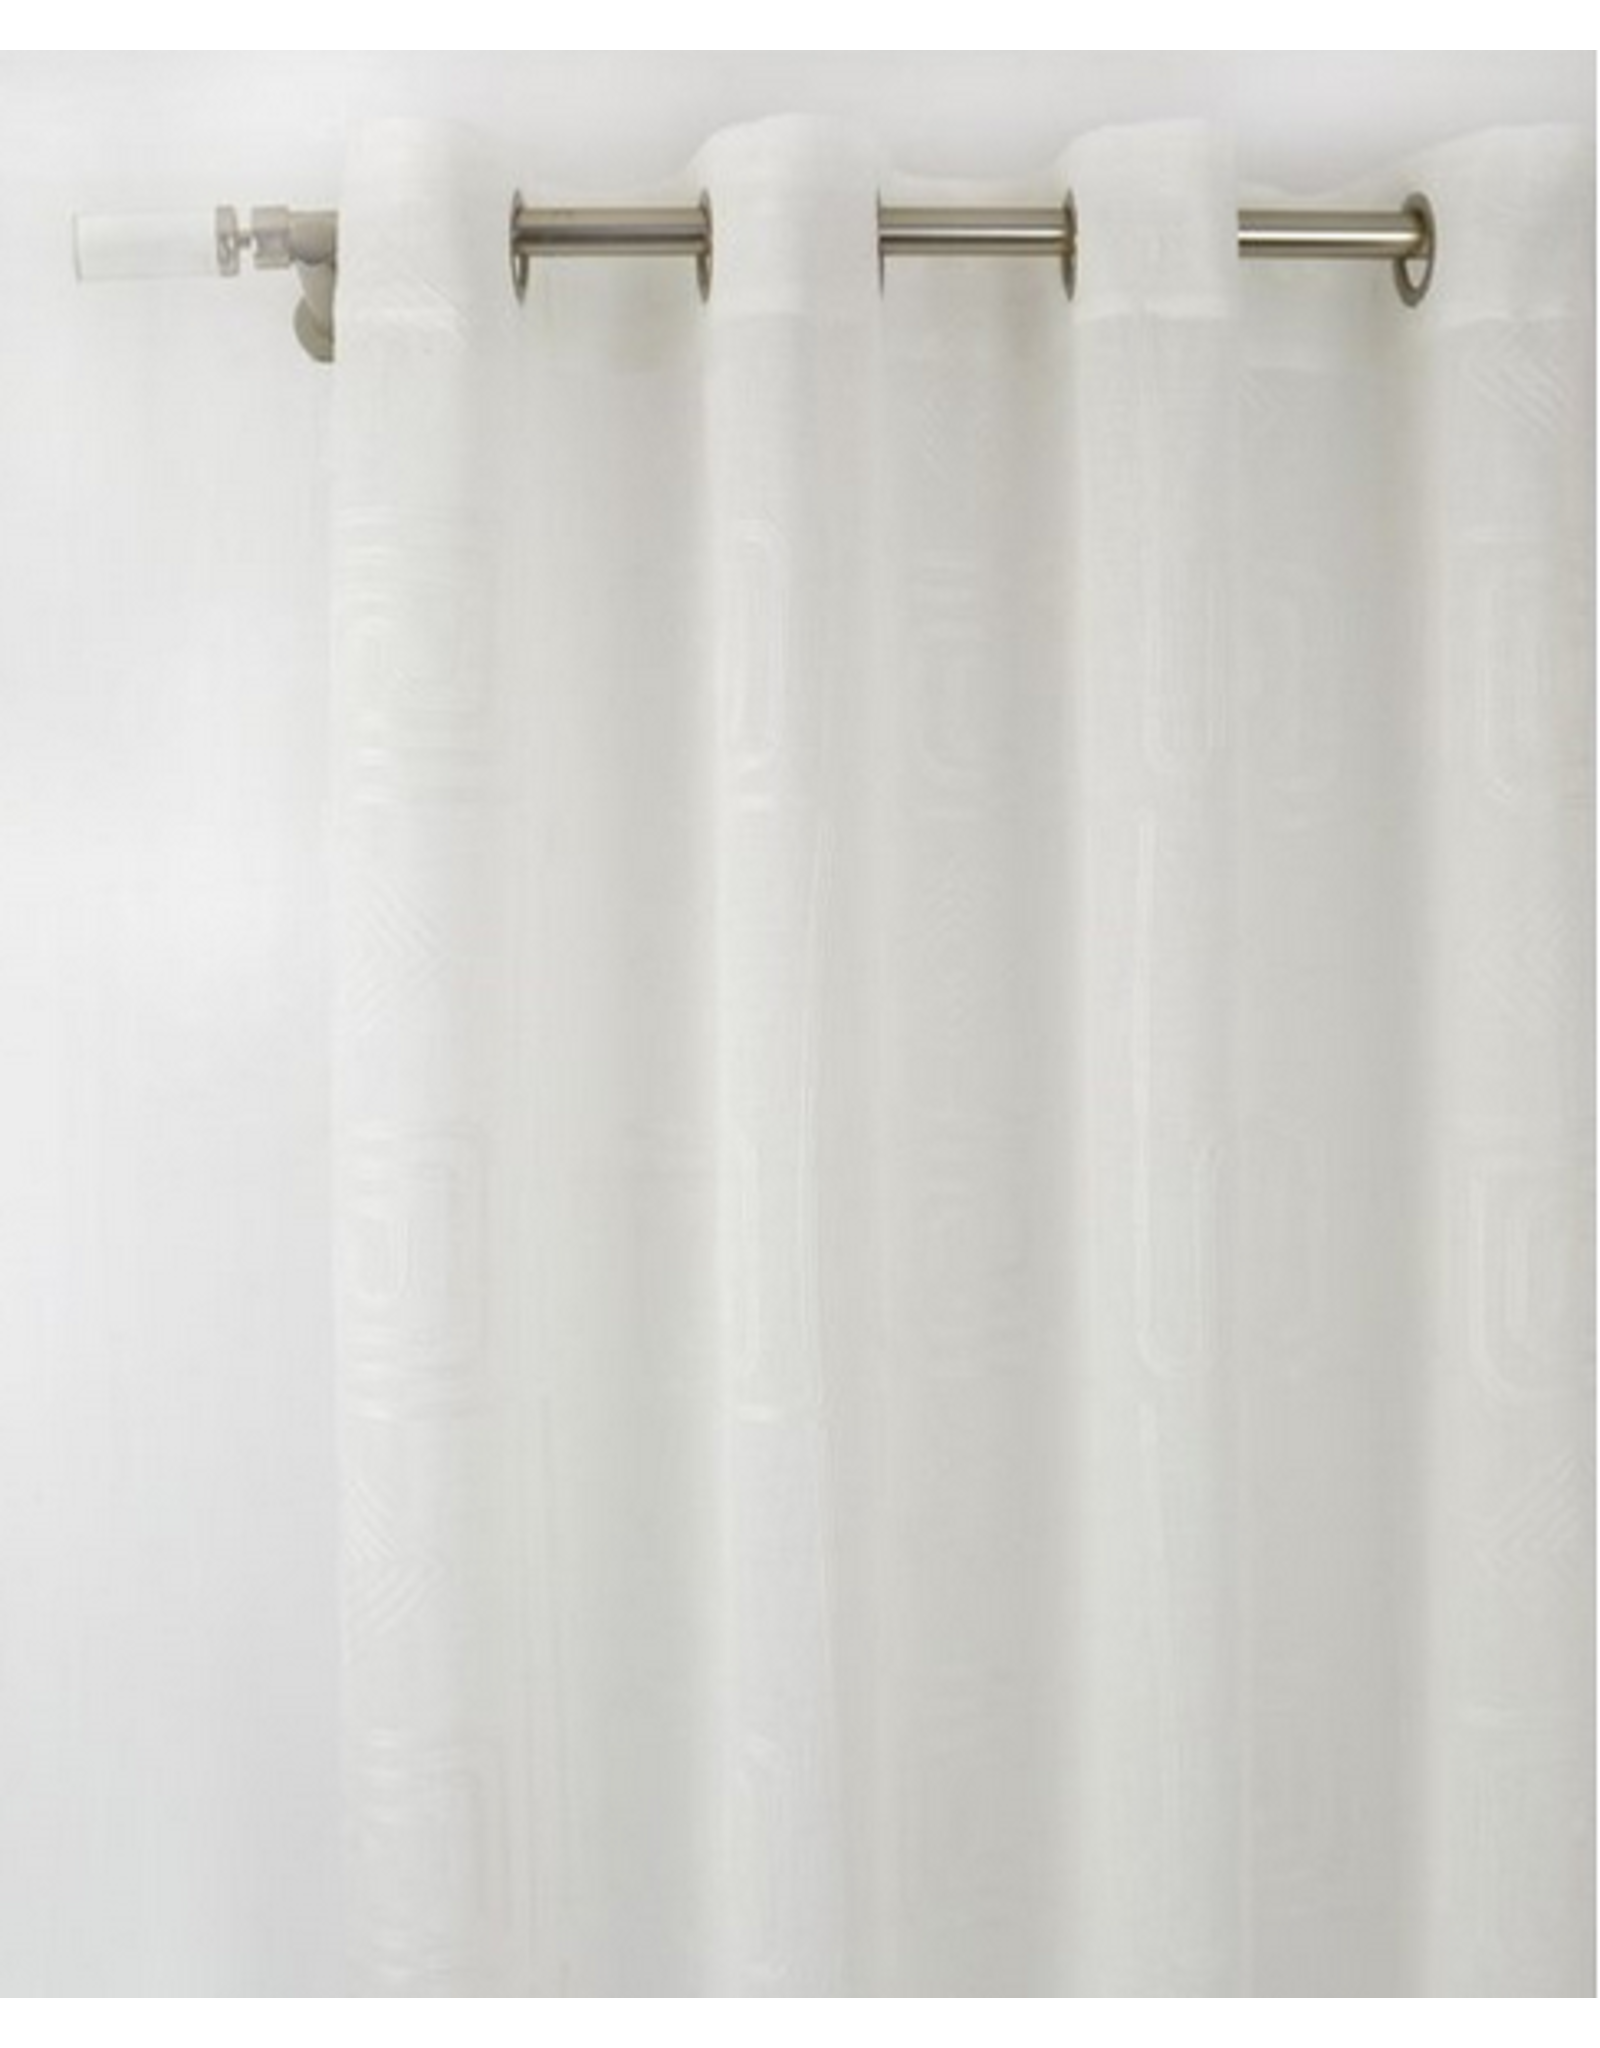 Artesia Grommet Panel - White